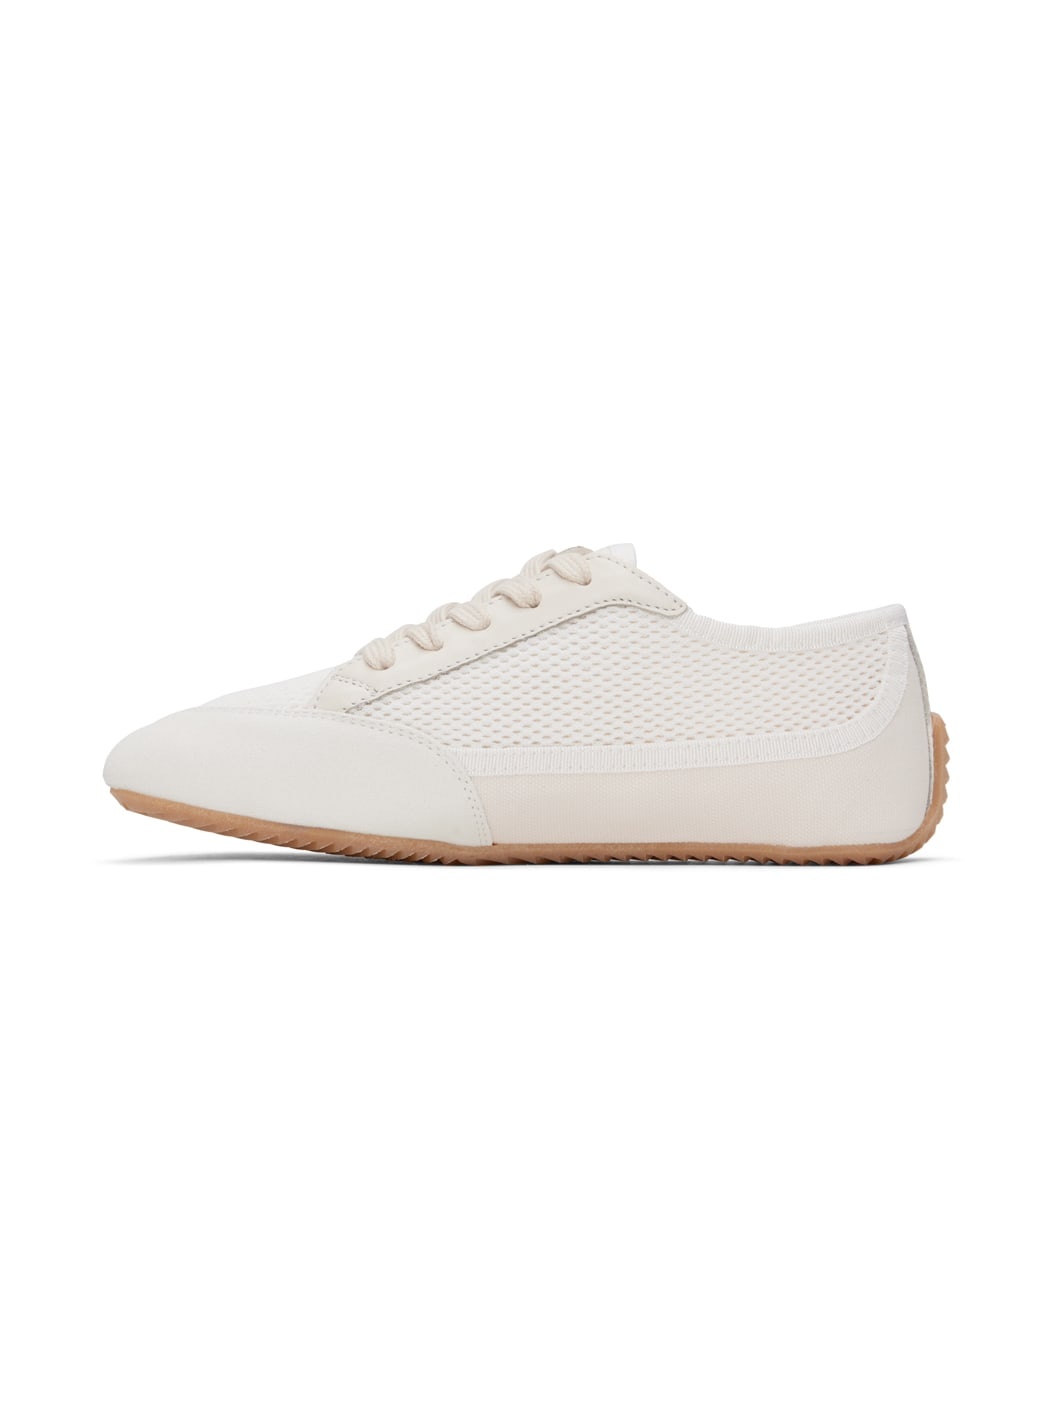 Off-White & White Bonnie Sneakers - 3